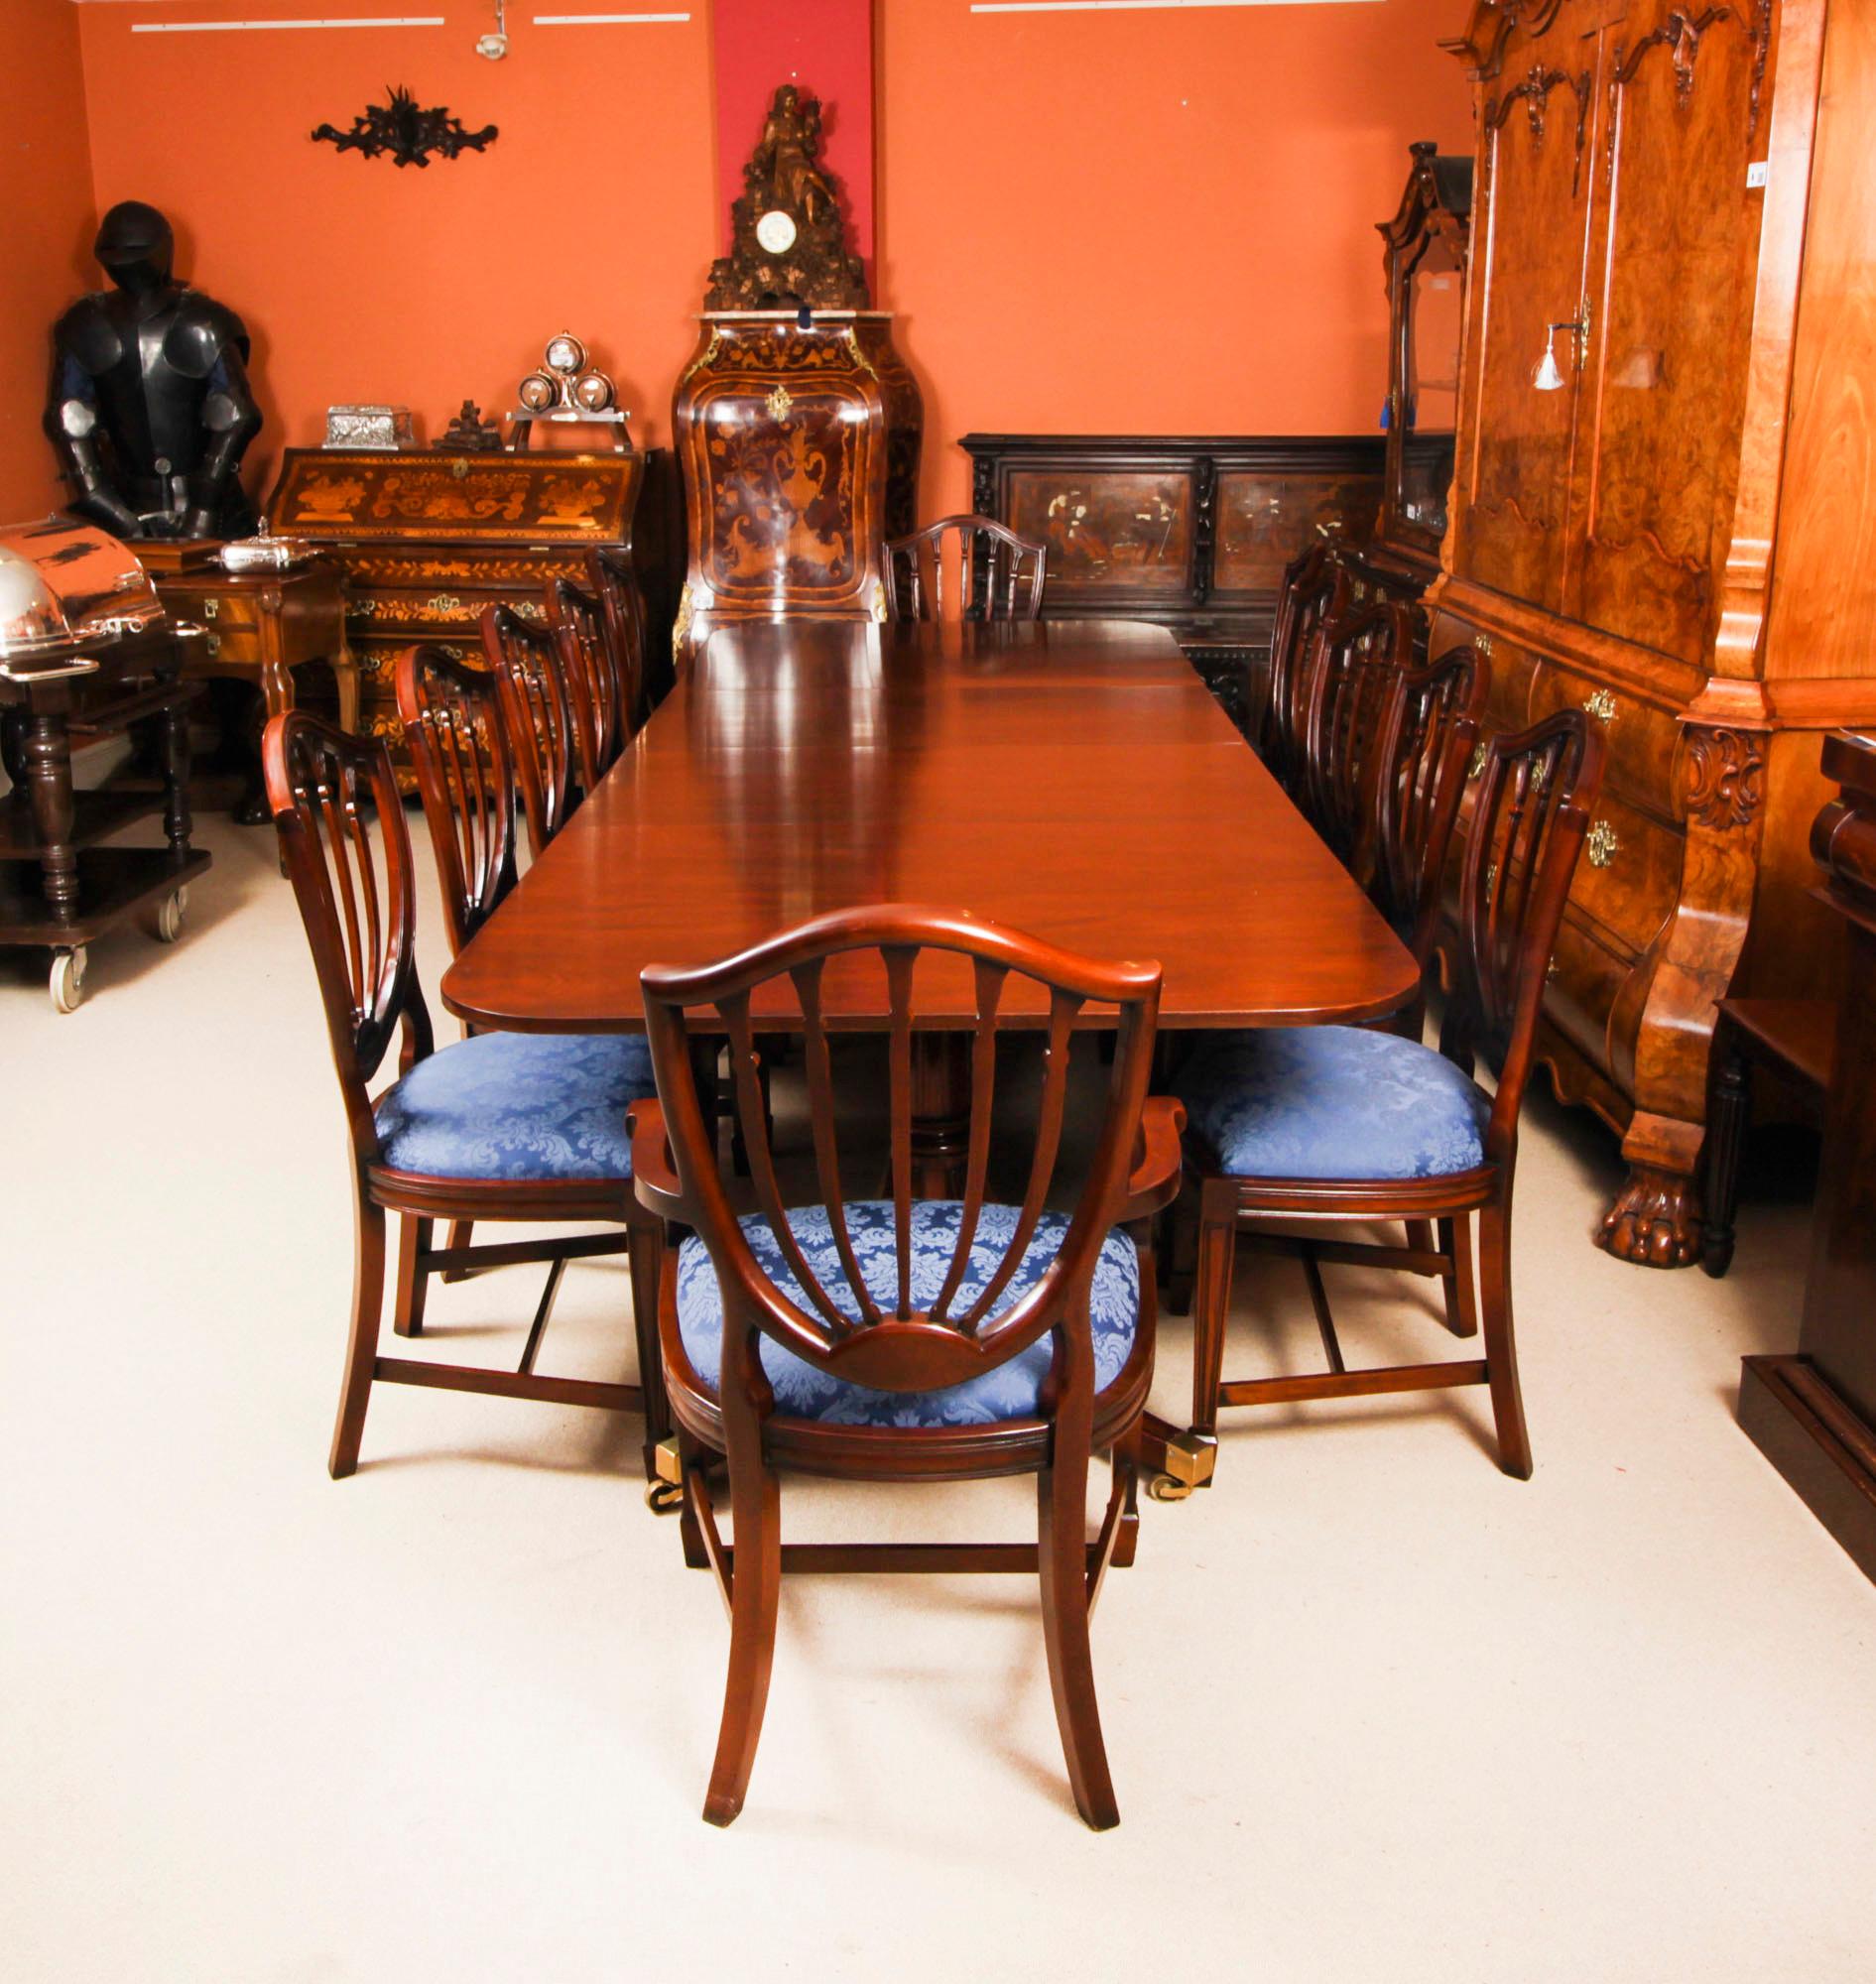 Dies ist  fabelhafte Vintage-Essgarnitur, bestehend aus einem Regency-Revival-Esstisch des Tischlermeisters William Tillman und einem Satz von zwölf Hepplewhite-Revival  Esszimmerstühle, ca. 1980.

Der Tisch ist aus massivem, geflammtem Mahagoni